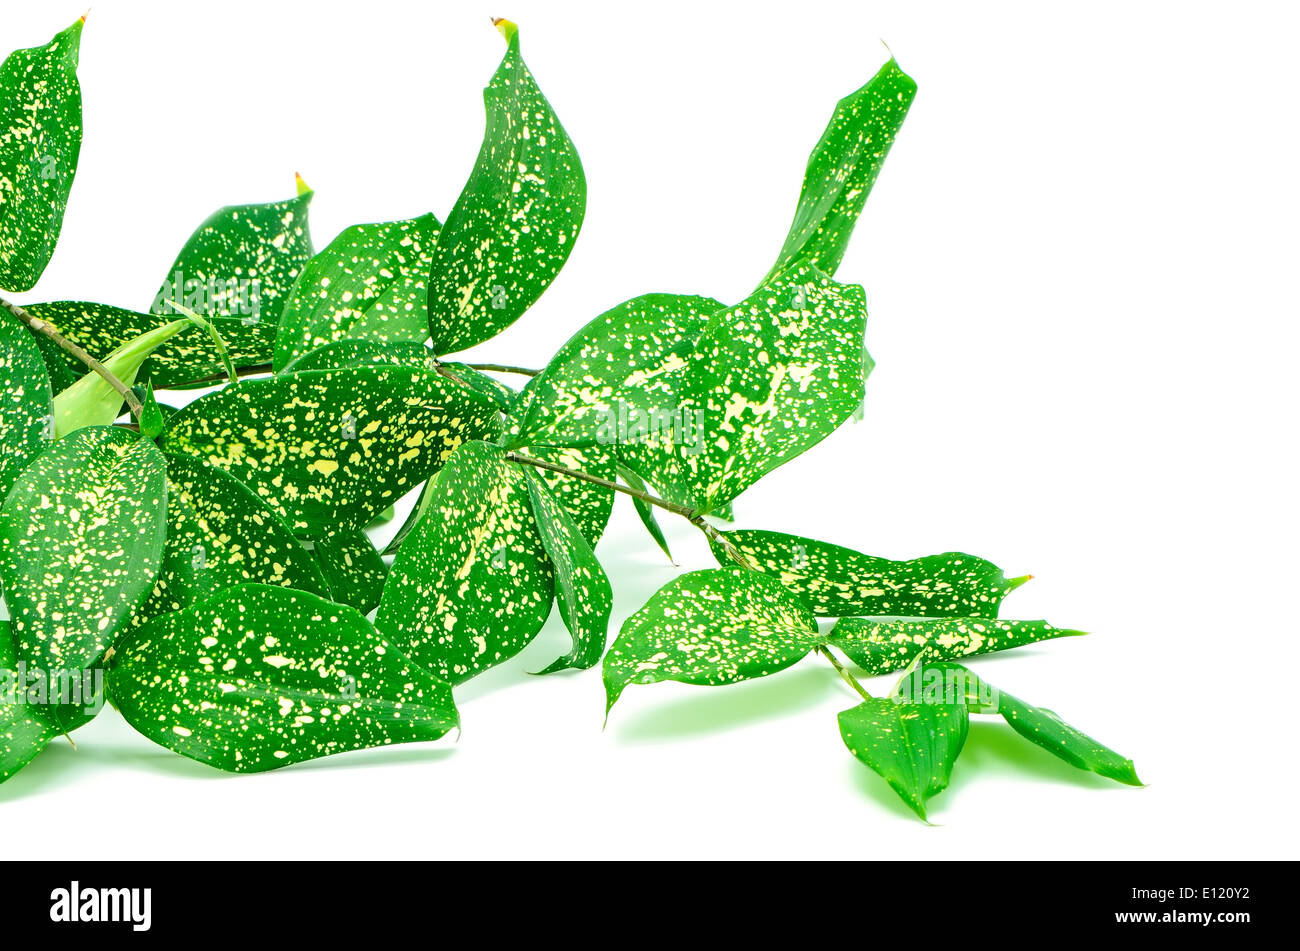 Fogliame, foglie di dracaena, polvere d'oro dracaena macchiato o dracaena, modulo di colore verde, isolato su sfondo bianco Foto Stock